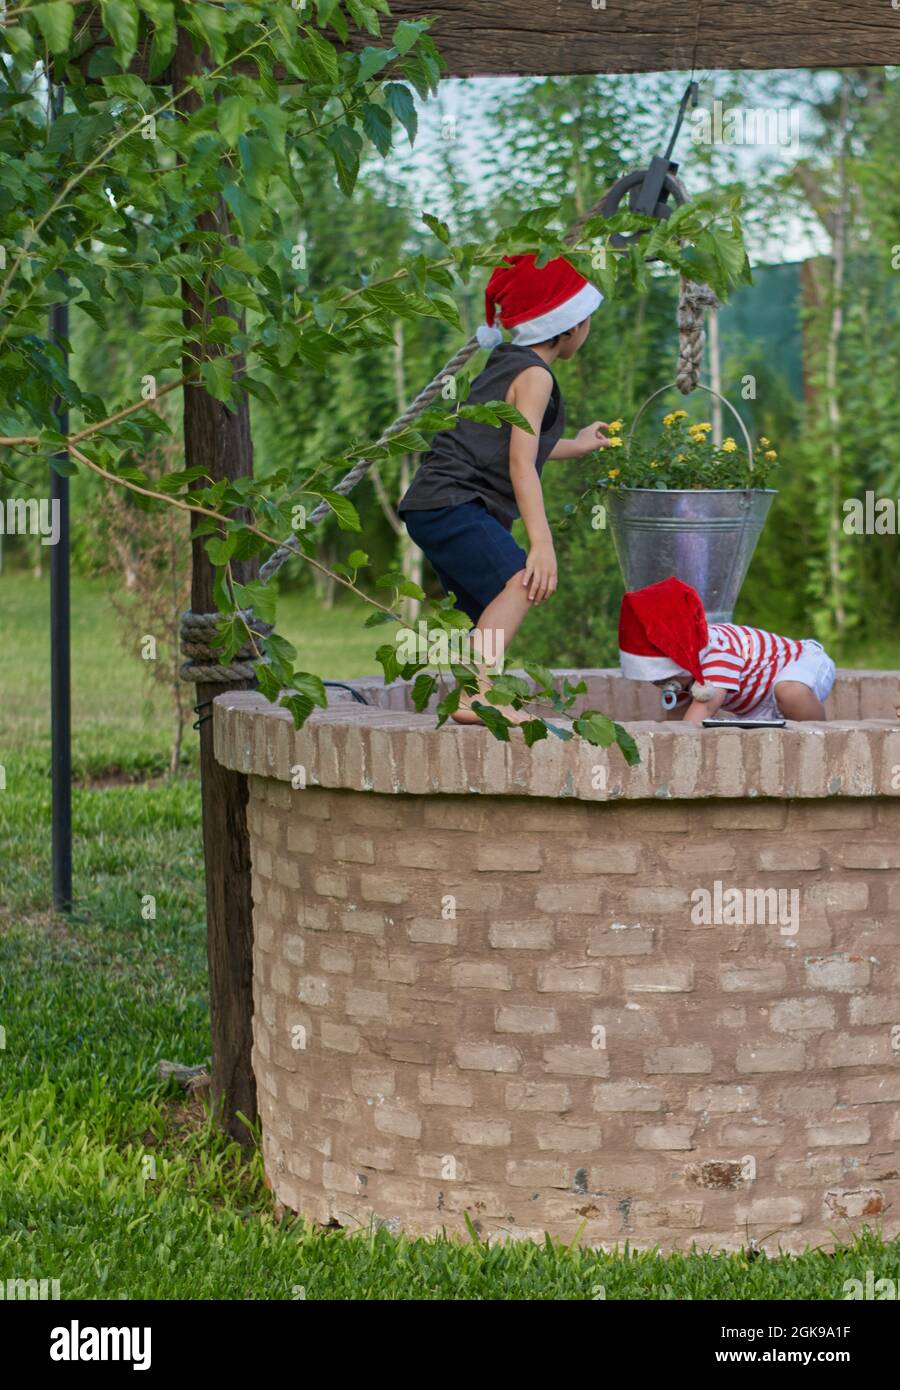 Deux enfants avec des chapeaux de Père Noël jouant sur un puits fermé d'eau en brique à l'heure de Noël. Végétation verte en arrière-plan. Été. Vertical Banque D'Images